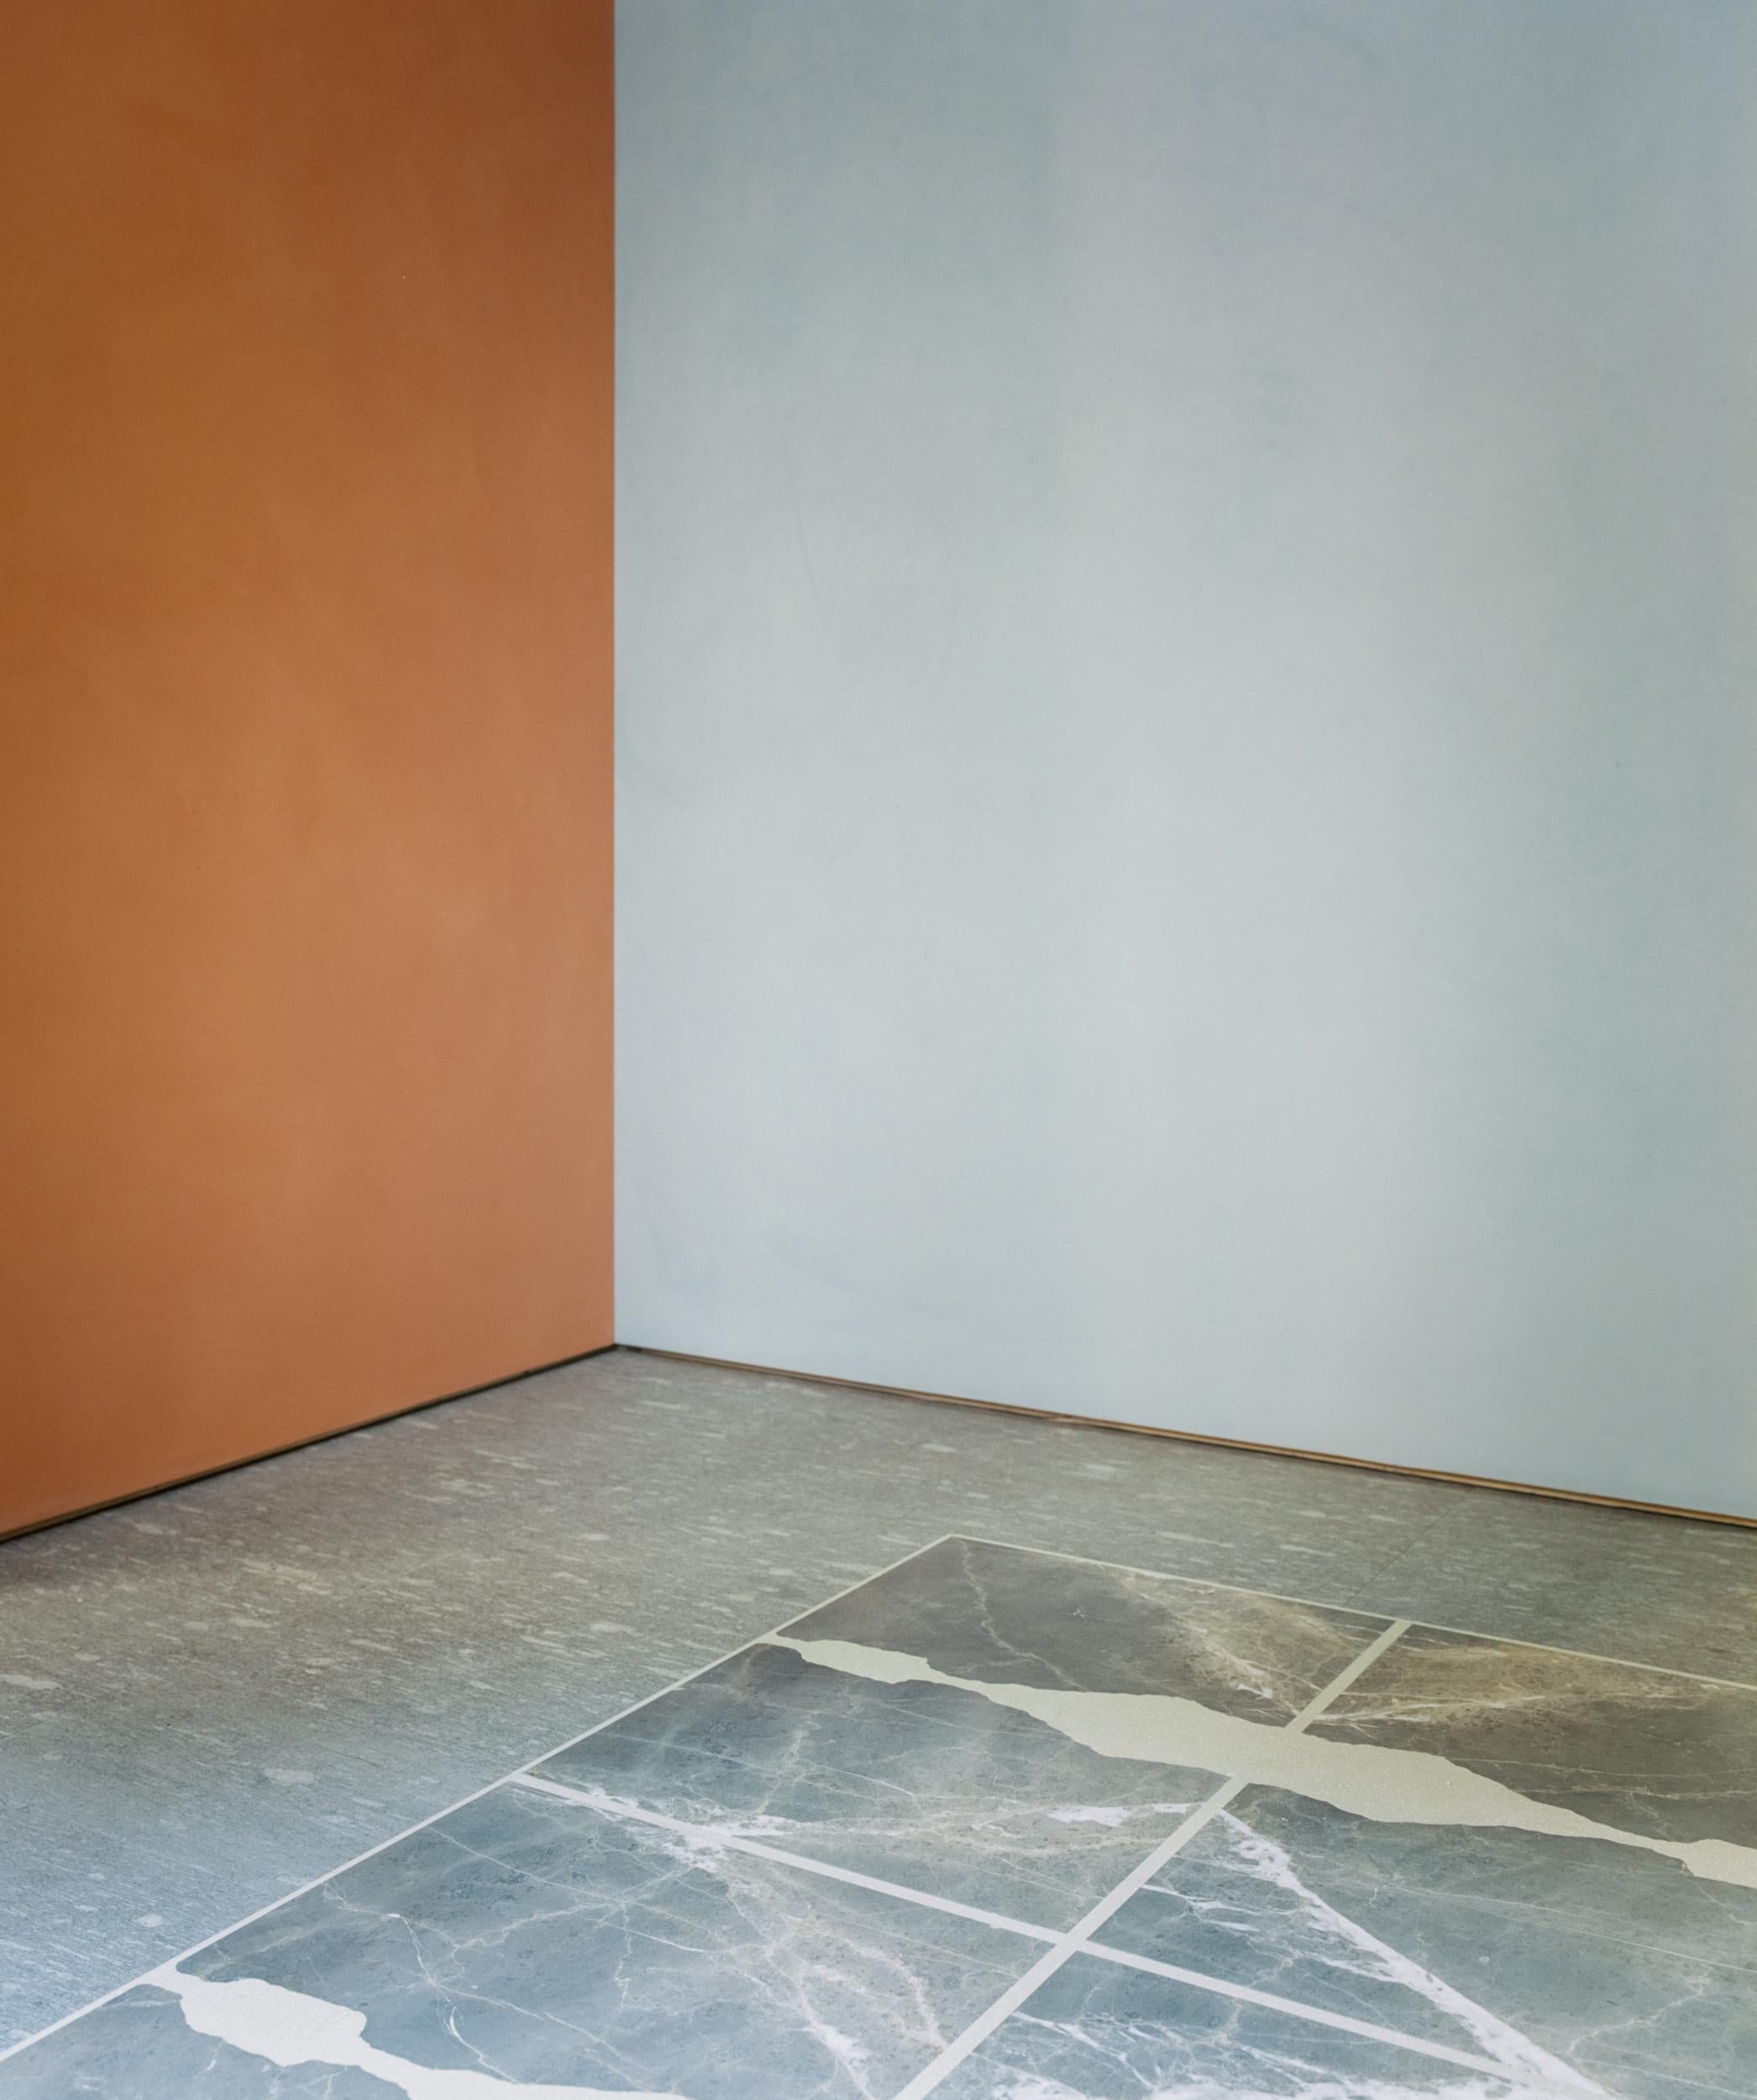 Terrazzo-Teppich von Stefan Scholten
Abmessungen: L 240 x B 170 x H 4 cm
MATERIALIEN: Aluminium, grigio collemandina

Stefan Scholten ist ein 1972 geborener niederländischer Designer. Nach seinem Abschluss an der Design Academy Eindhoven gründete er